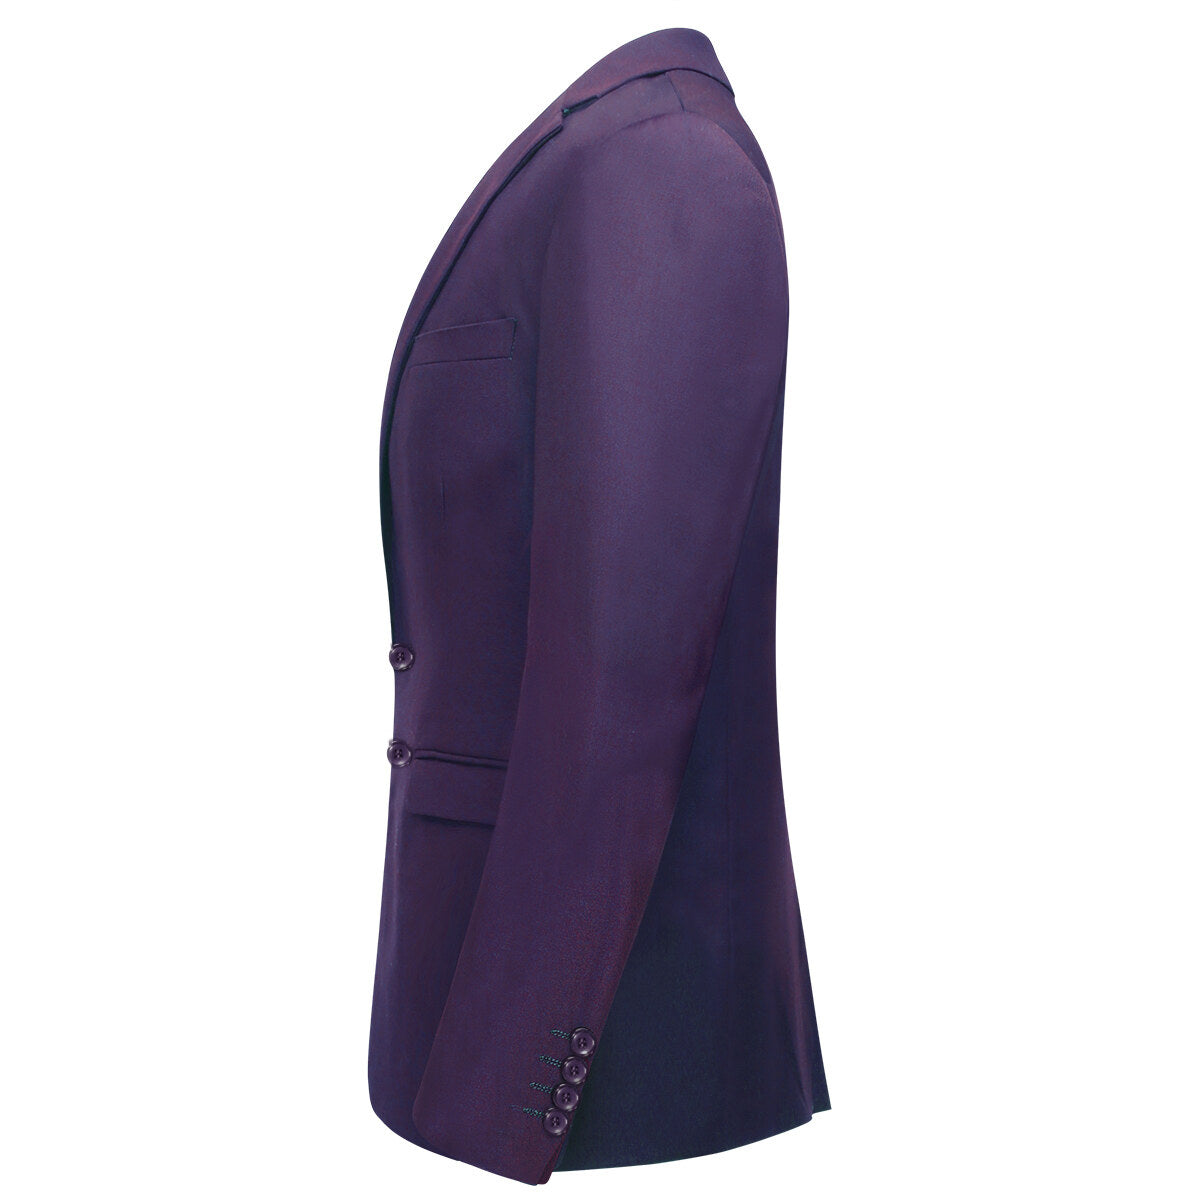 Mens 2-Piece Slim Fit Two Button Purple Suit